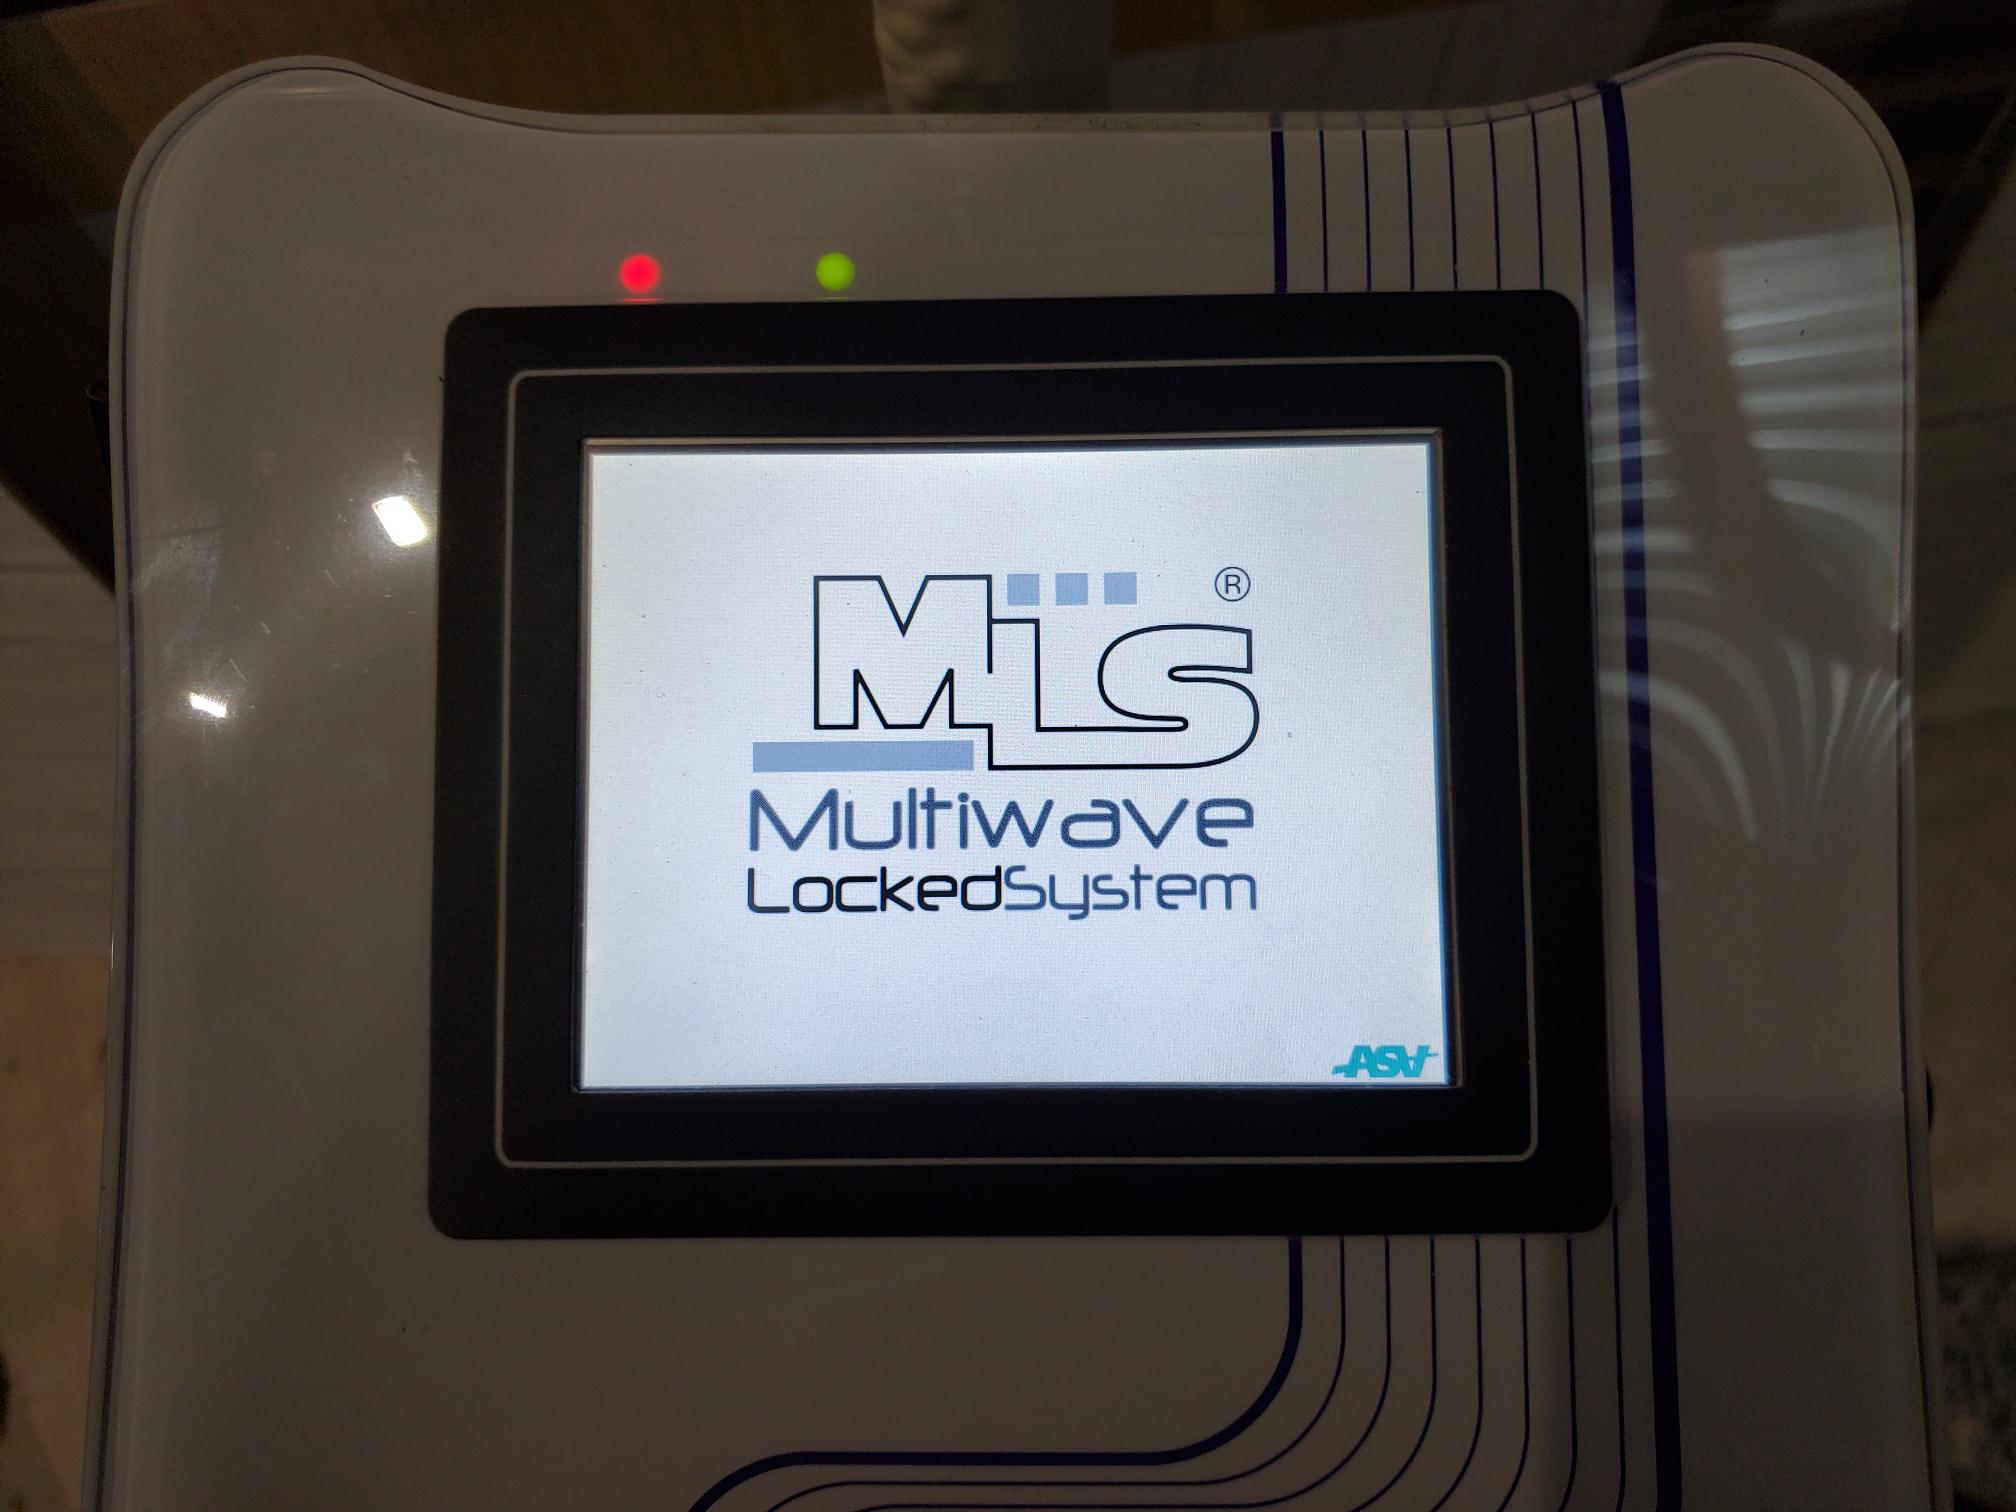 MLS Multiwave Locked System Laser Manufactured 3/2013 DIAGNOSTIC ULTRASOUND MACHINES FOR SALE